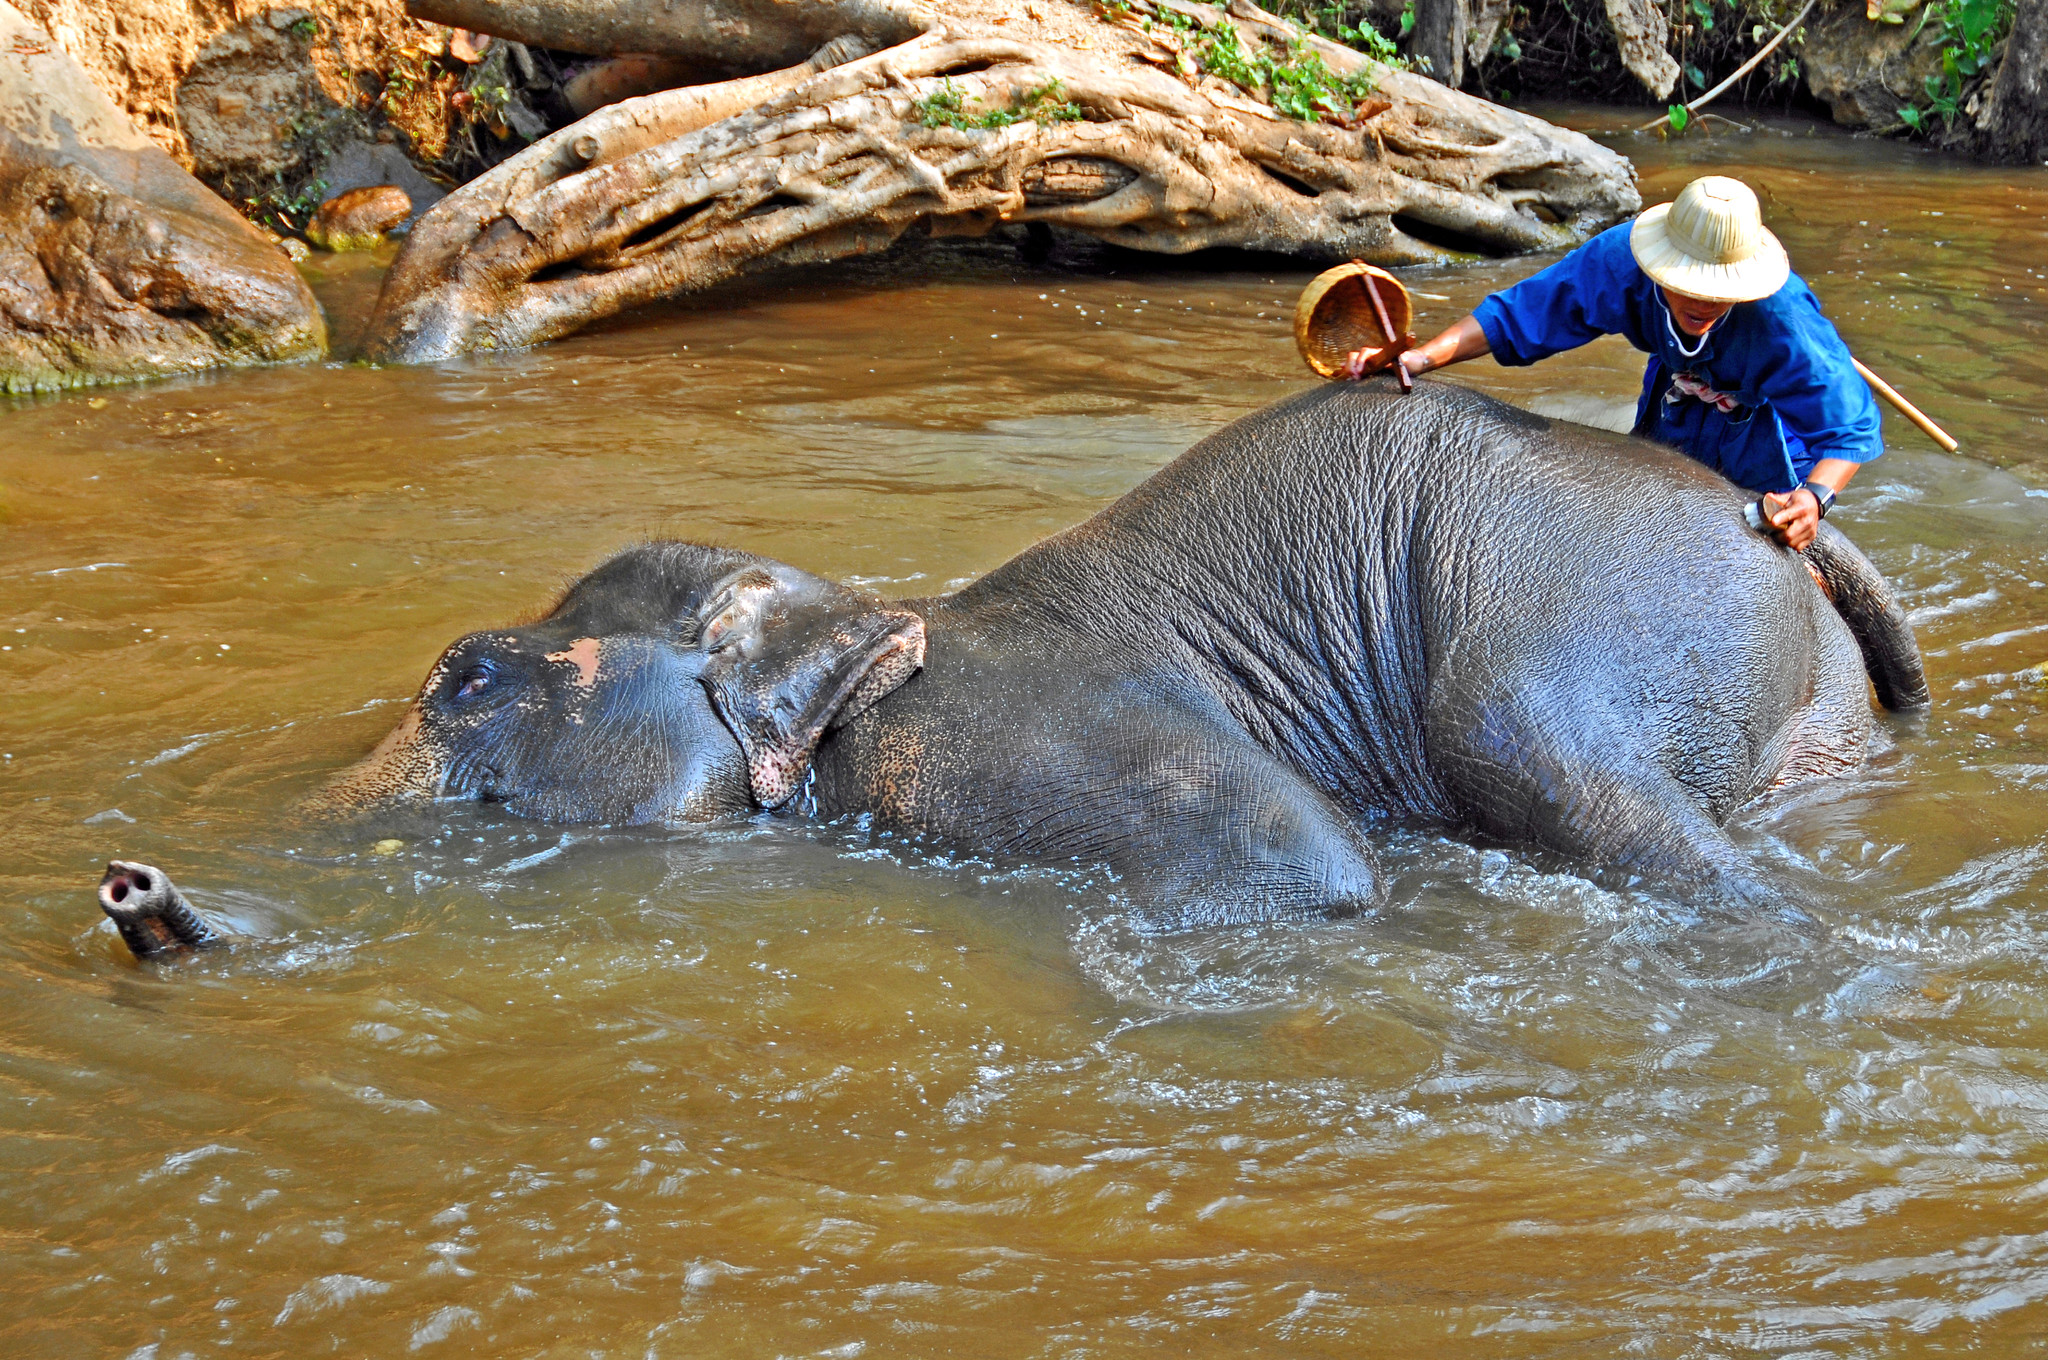 Un elefante yace en un arroyo mientras una persona lava su cuerpo con un cepillo.